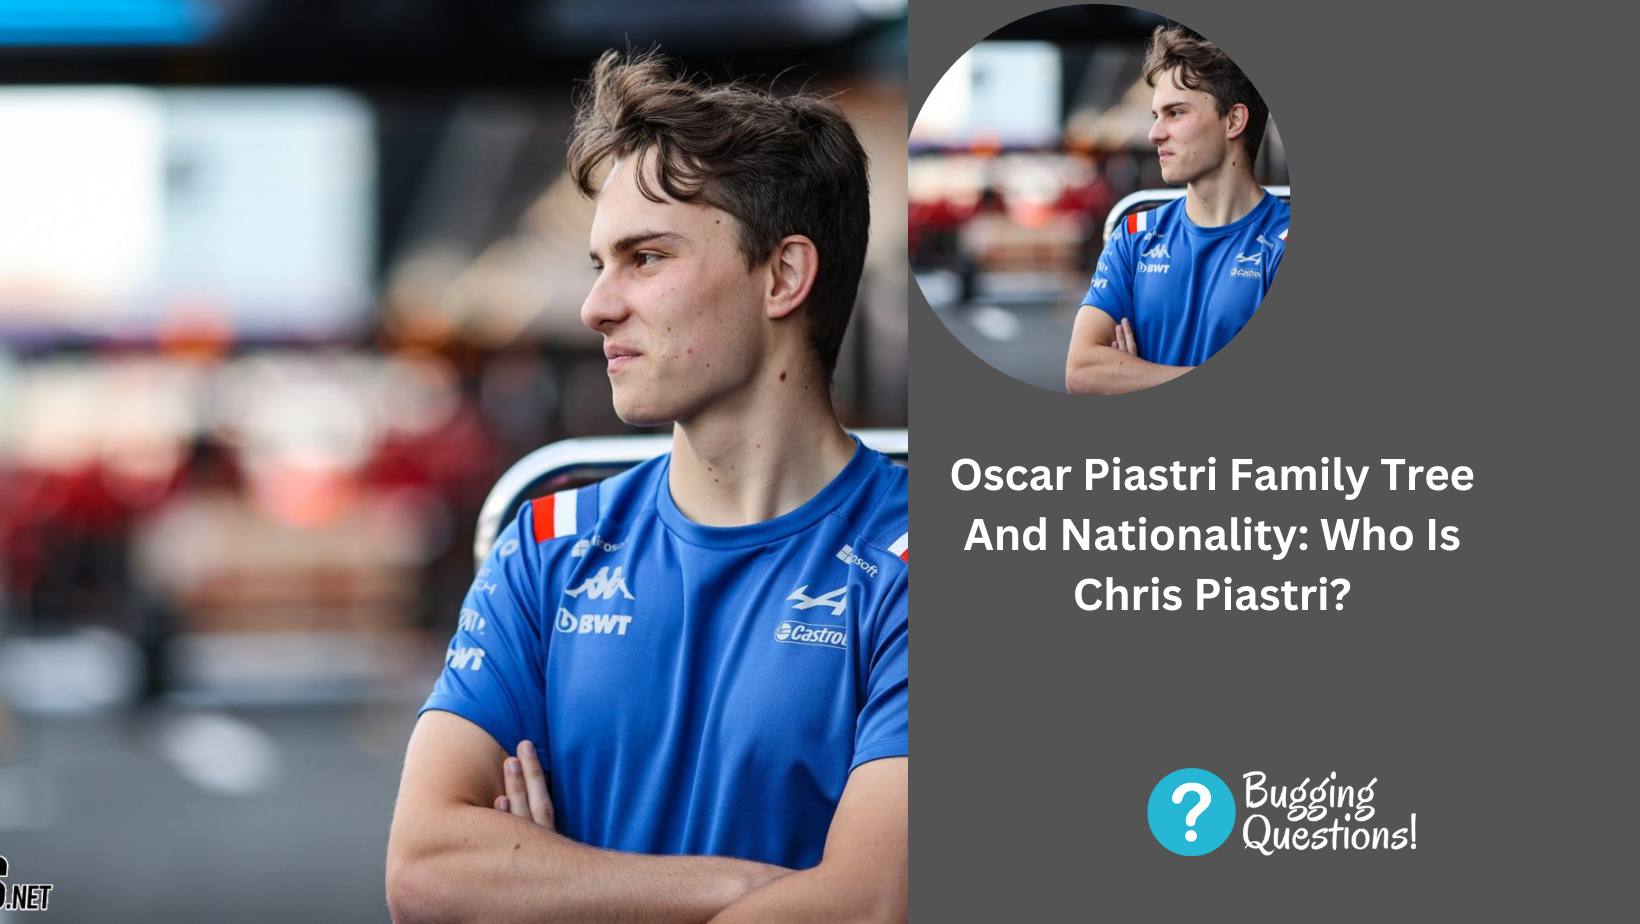 Oscar Piastri Family Tree And Nationality: Who Is Chris Piastri?